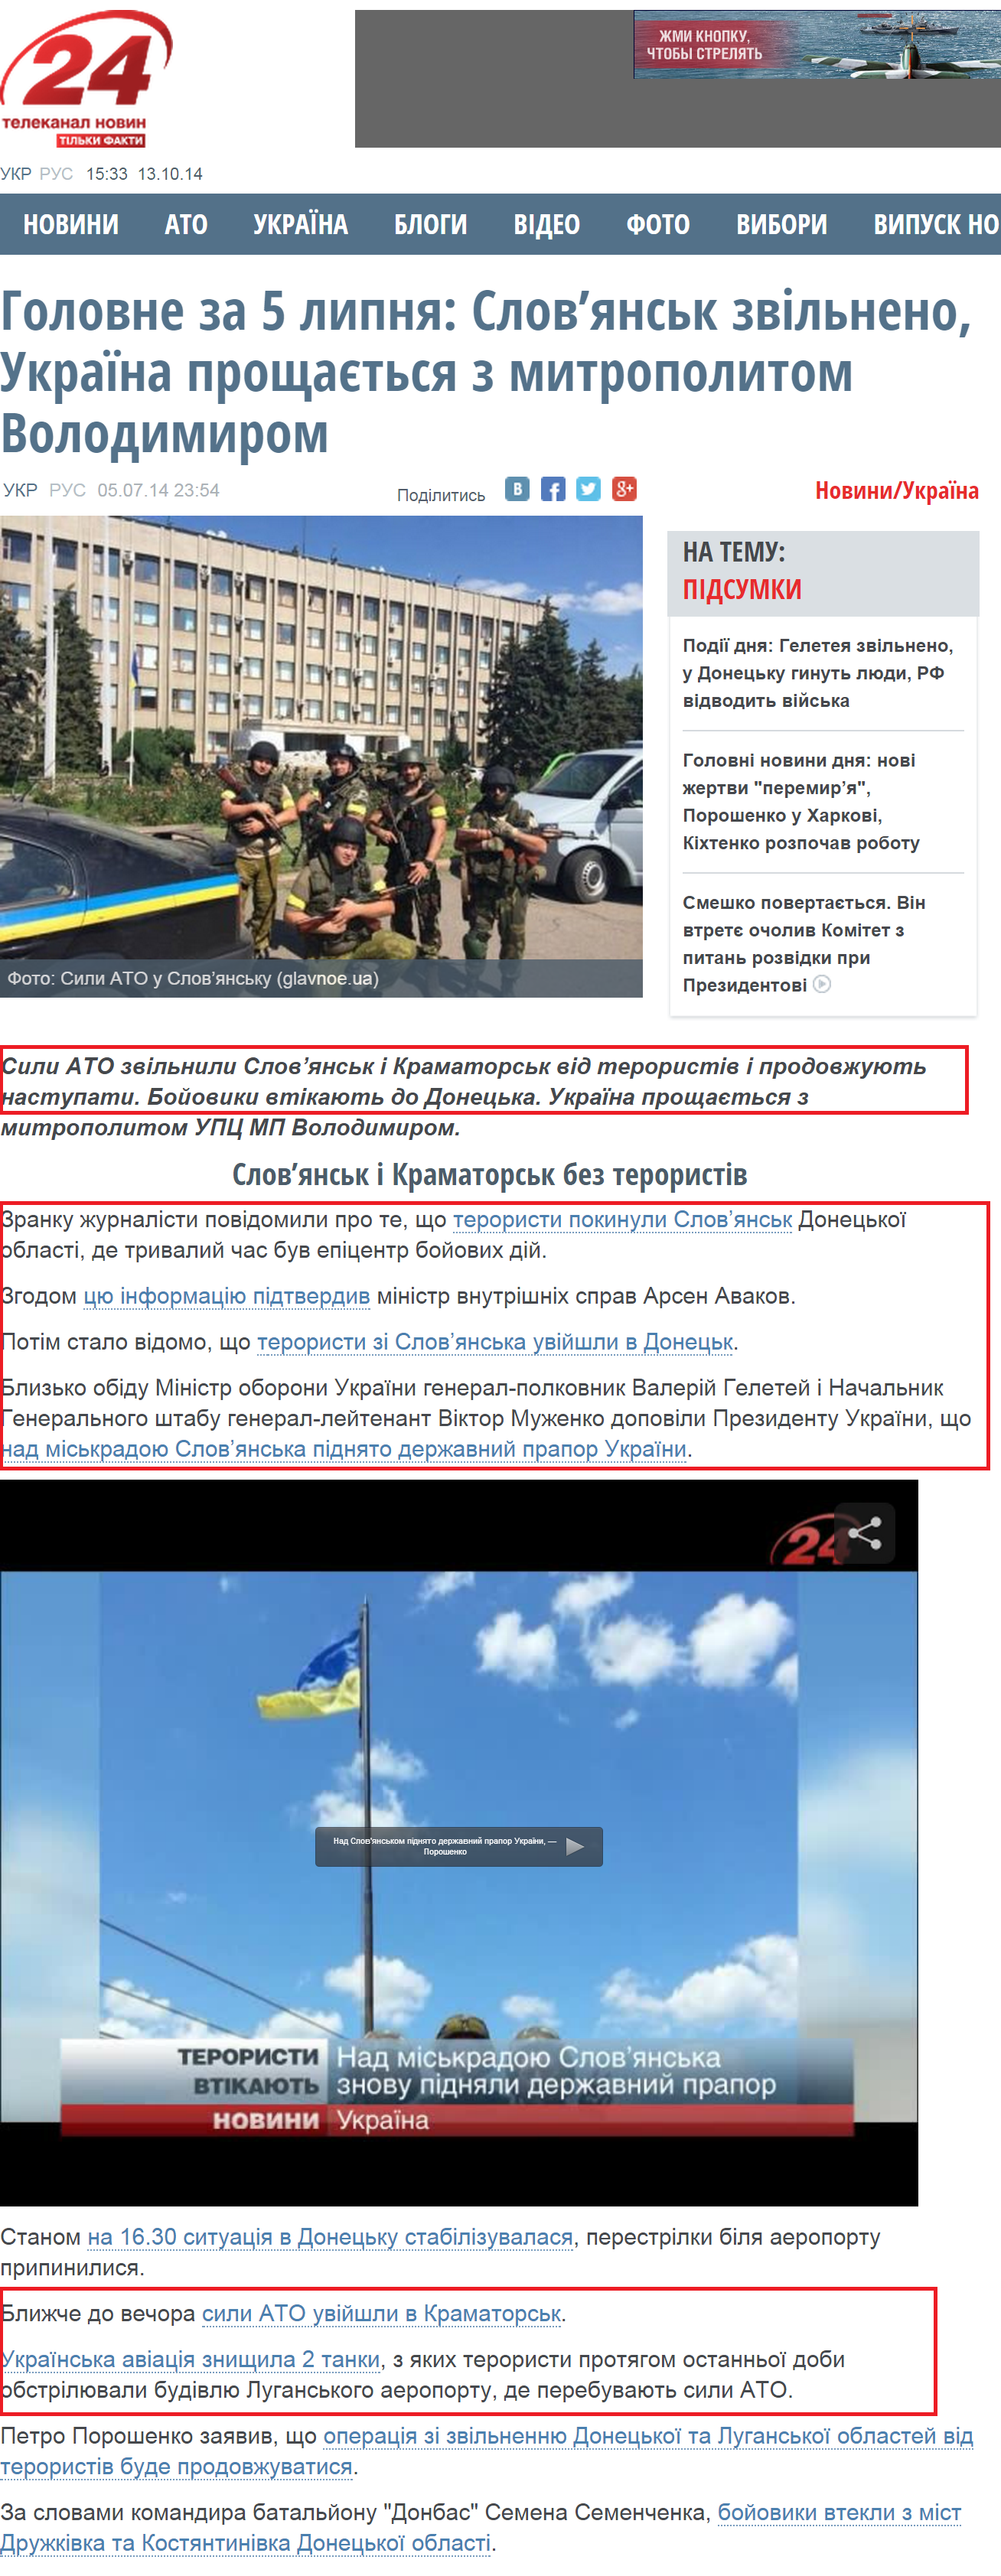 http://24tv.ua/home/showSingleNews.do?golovne_za_5_lipnya_slovyansk_zvilneno_ukrayina_proshhayetsya_z_mitropolitom_volodimirom&objectId=461251